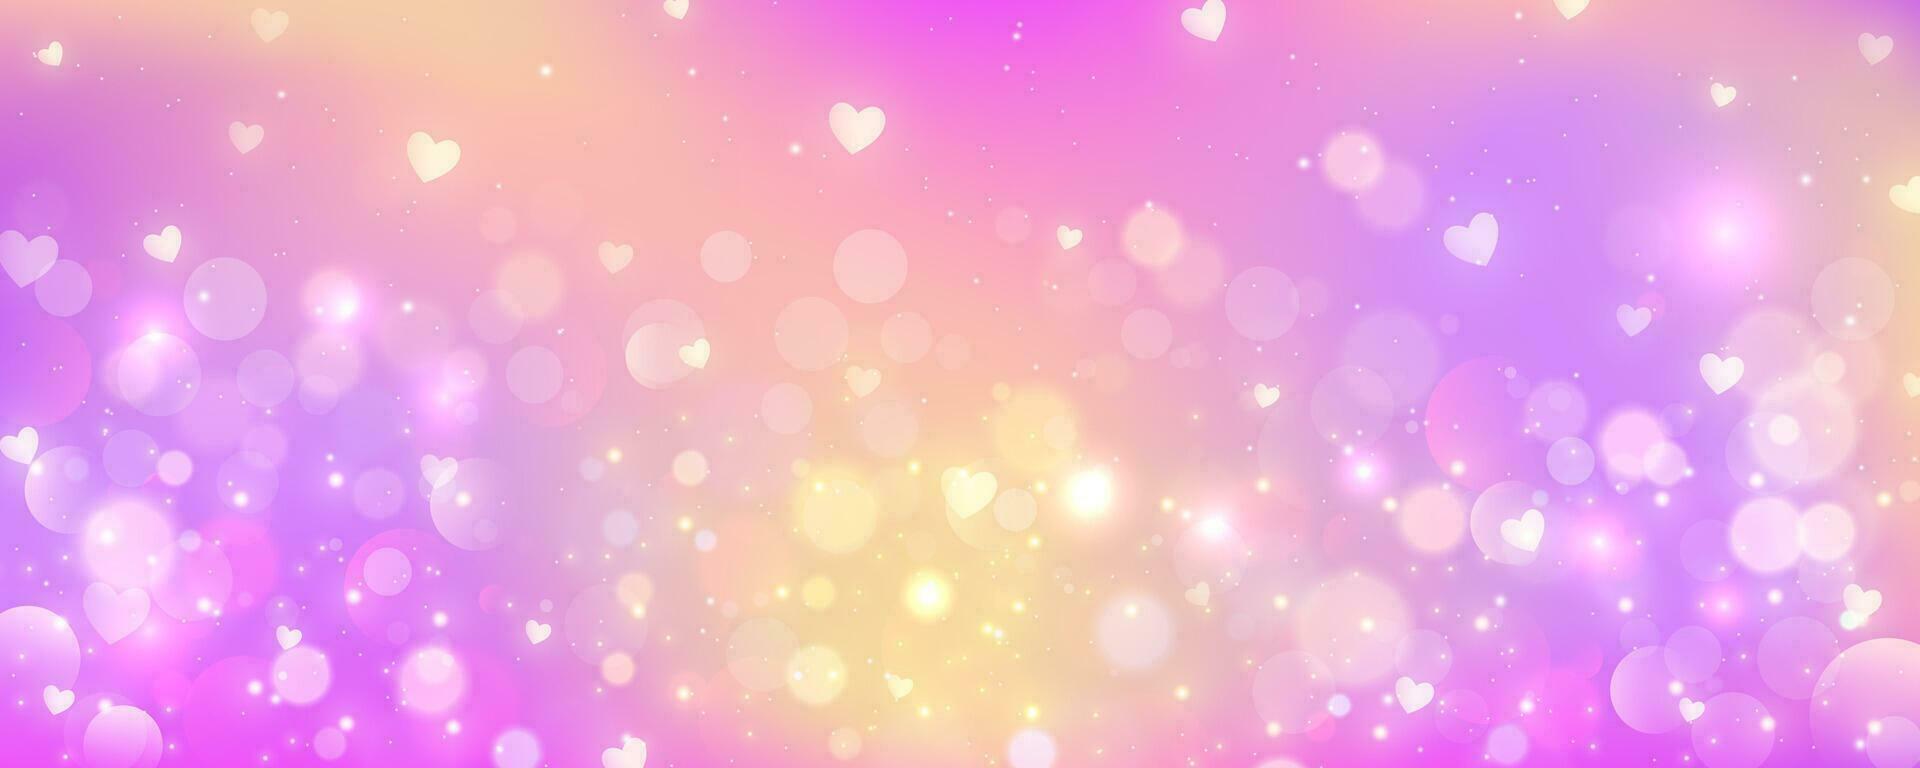 rosado antecedentes con Bokeh. ligero pastel cielo con Brillantina estrellas y corazones. linda suave degradado borroso fondo de pantalla. cariñosamente fantasía magia diseño. vector. vector